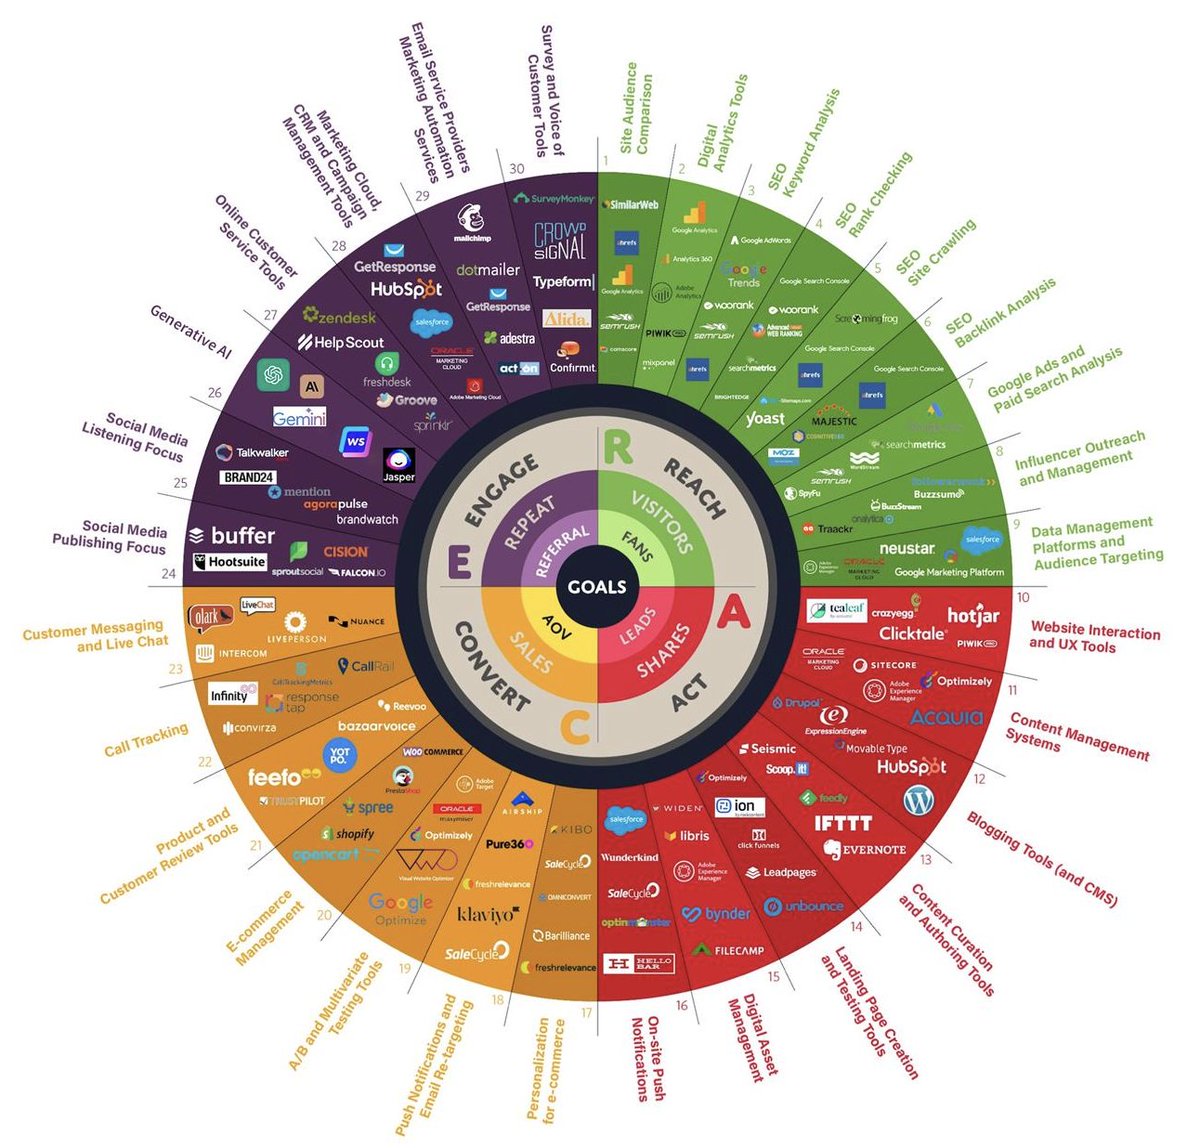 Infografik der wichtigen digitalen #Marketingtools für Marketingmanager, die ihre Strategien verbessern möchten – 30 Marketing-Kategorien werden abgedeckt.
held.one/KI 
#digitaleMarketingTools